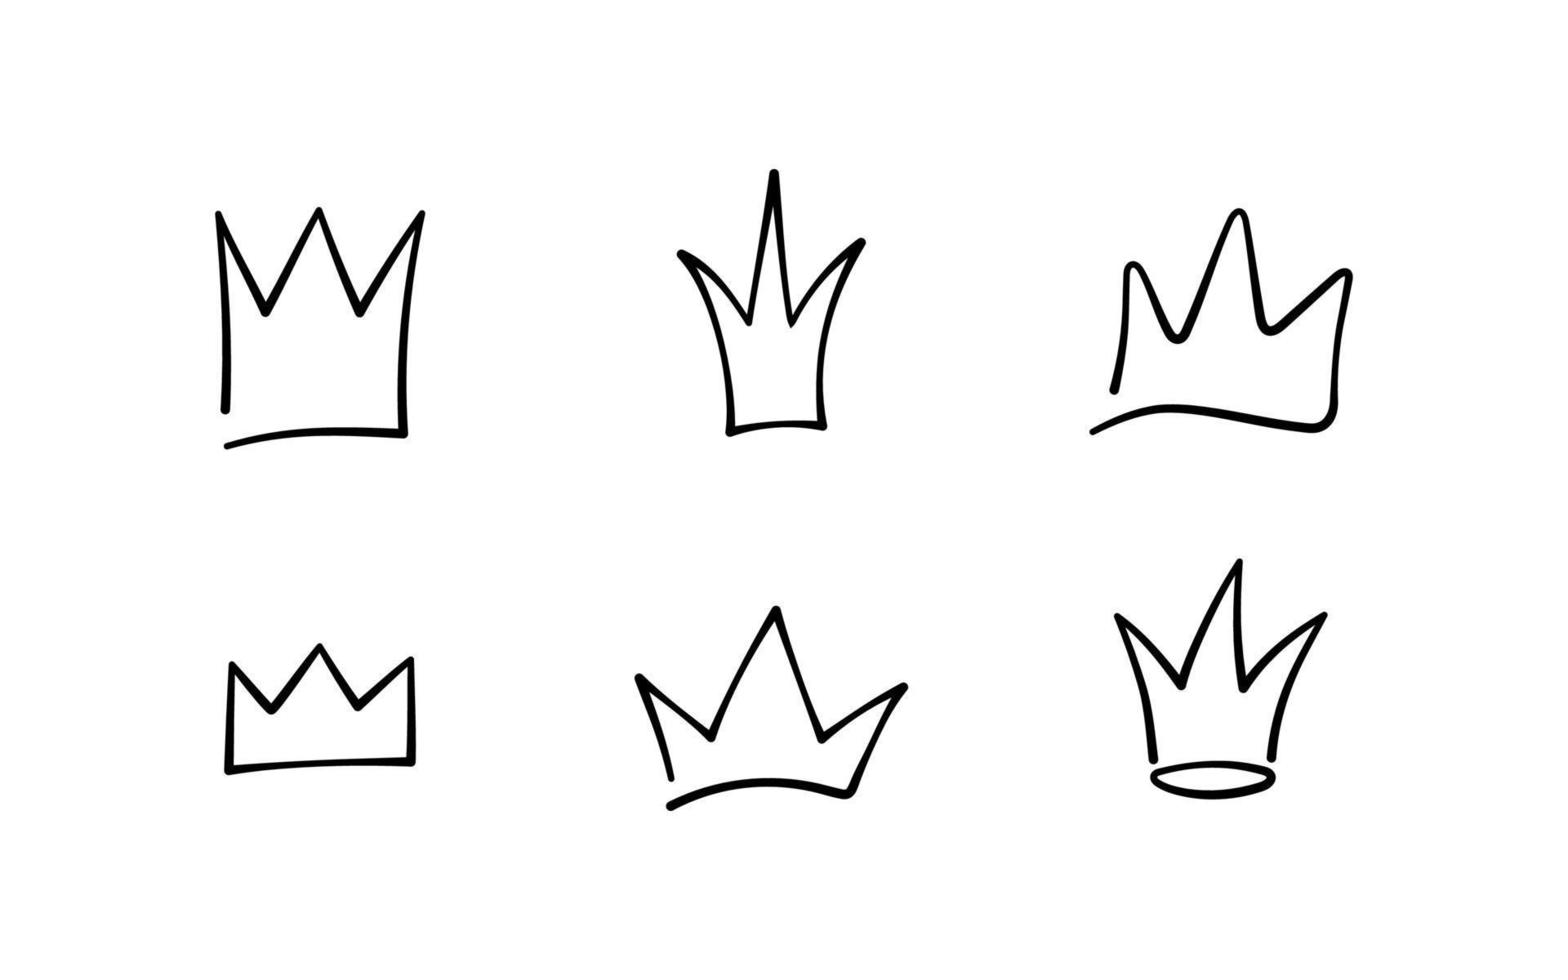 set di corone di doodle disegnate a mano. bozzetti della corona del re, diadema maestoso, diademi reali del re e della regina. illustrazione vettoriale isolata in stile doodle su sfondo bianco